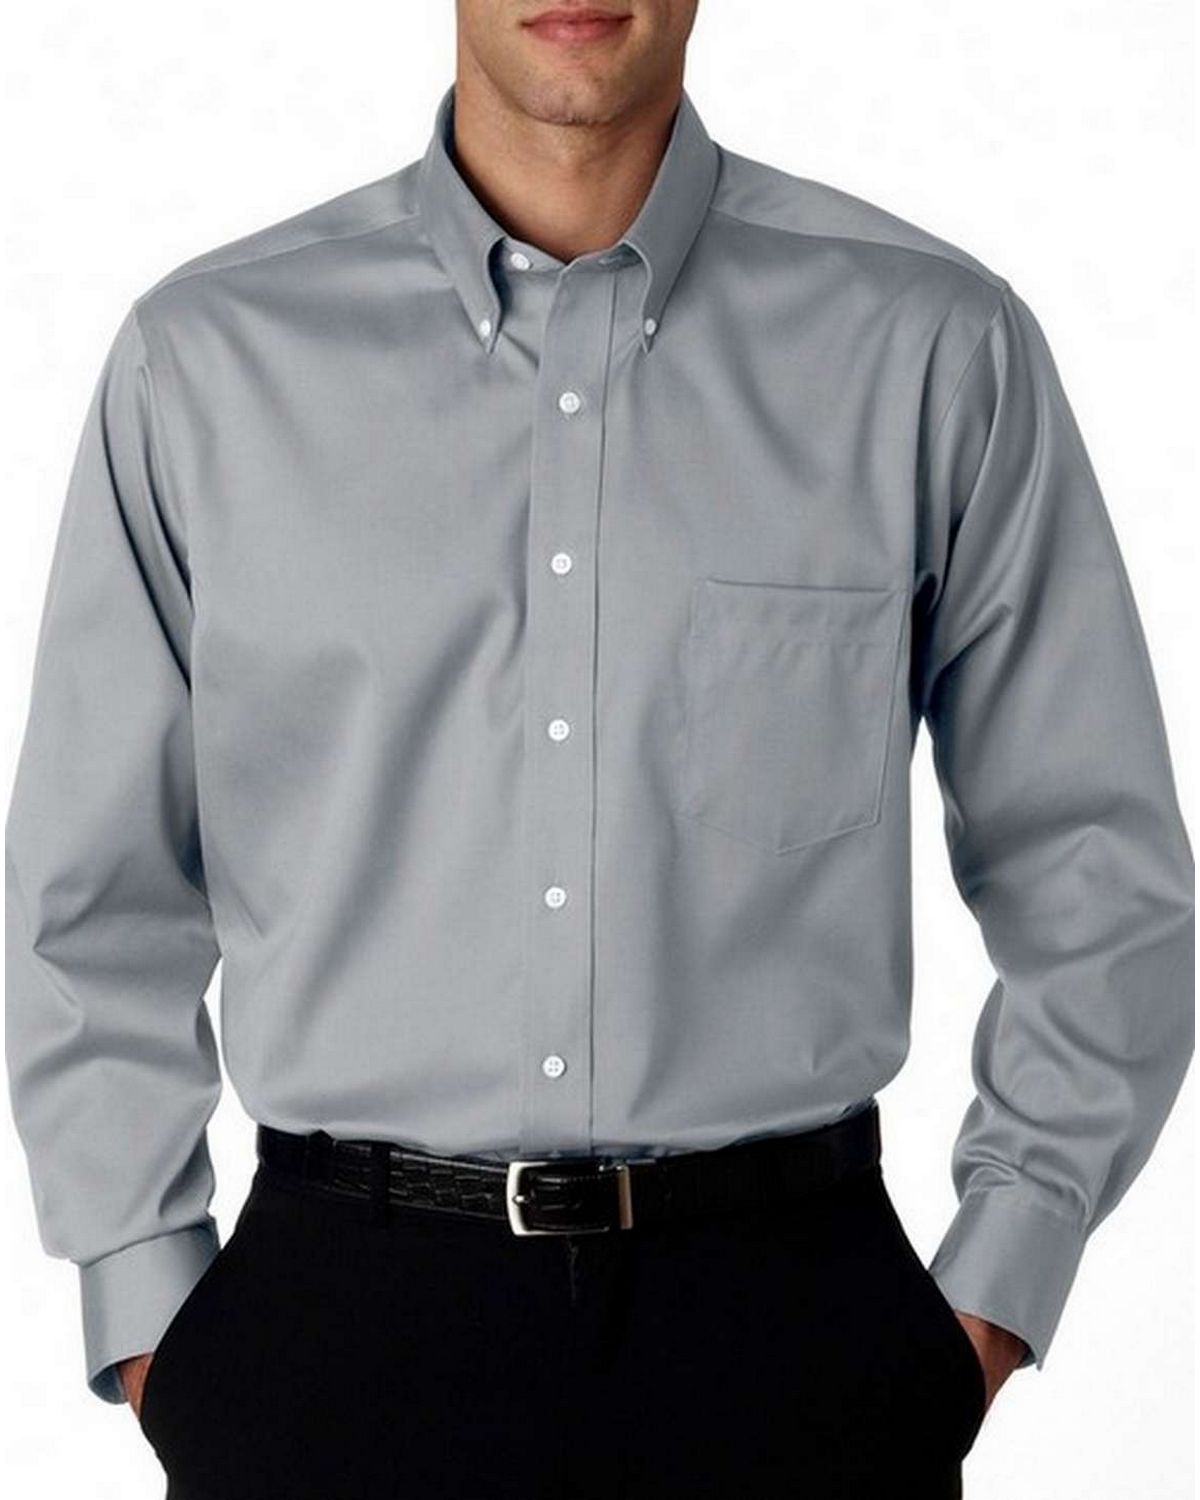 Купить рубашку кнопки. Van Heusen одежда. Индийская рубашка мужская. Рубашки Ван Хойзен. Button down Shirt.